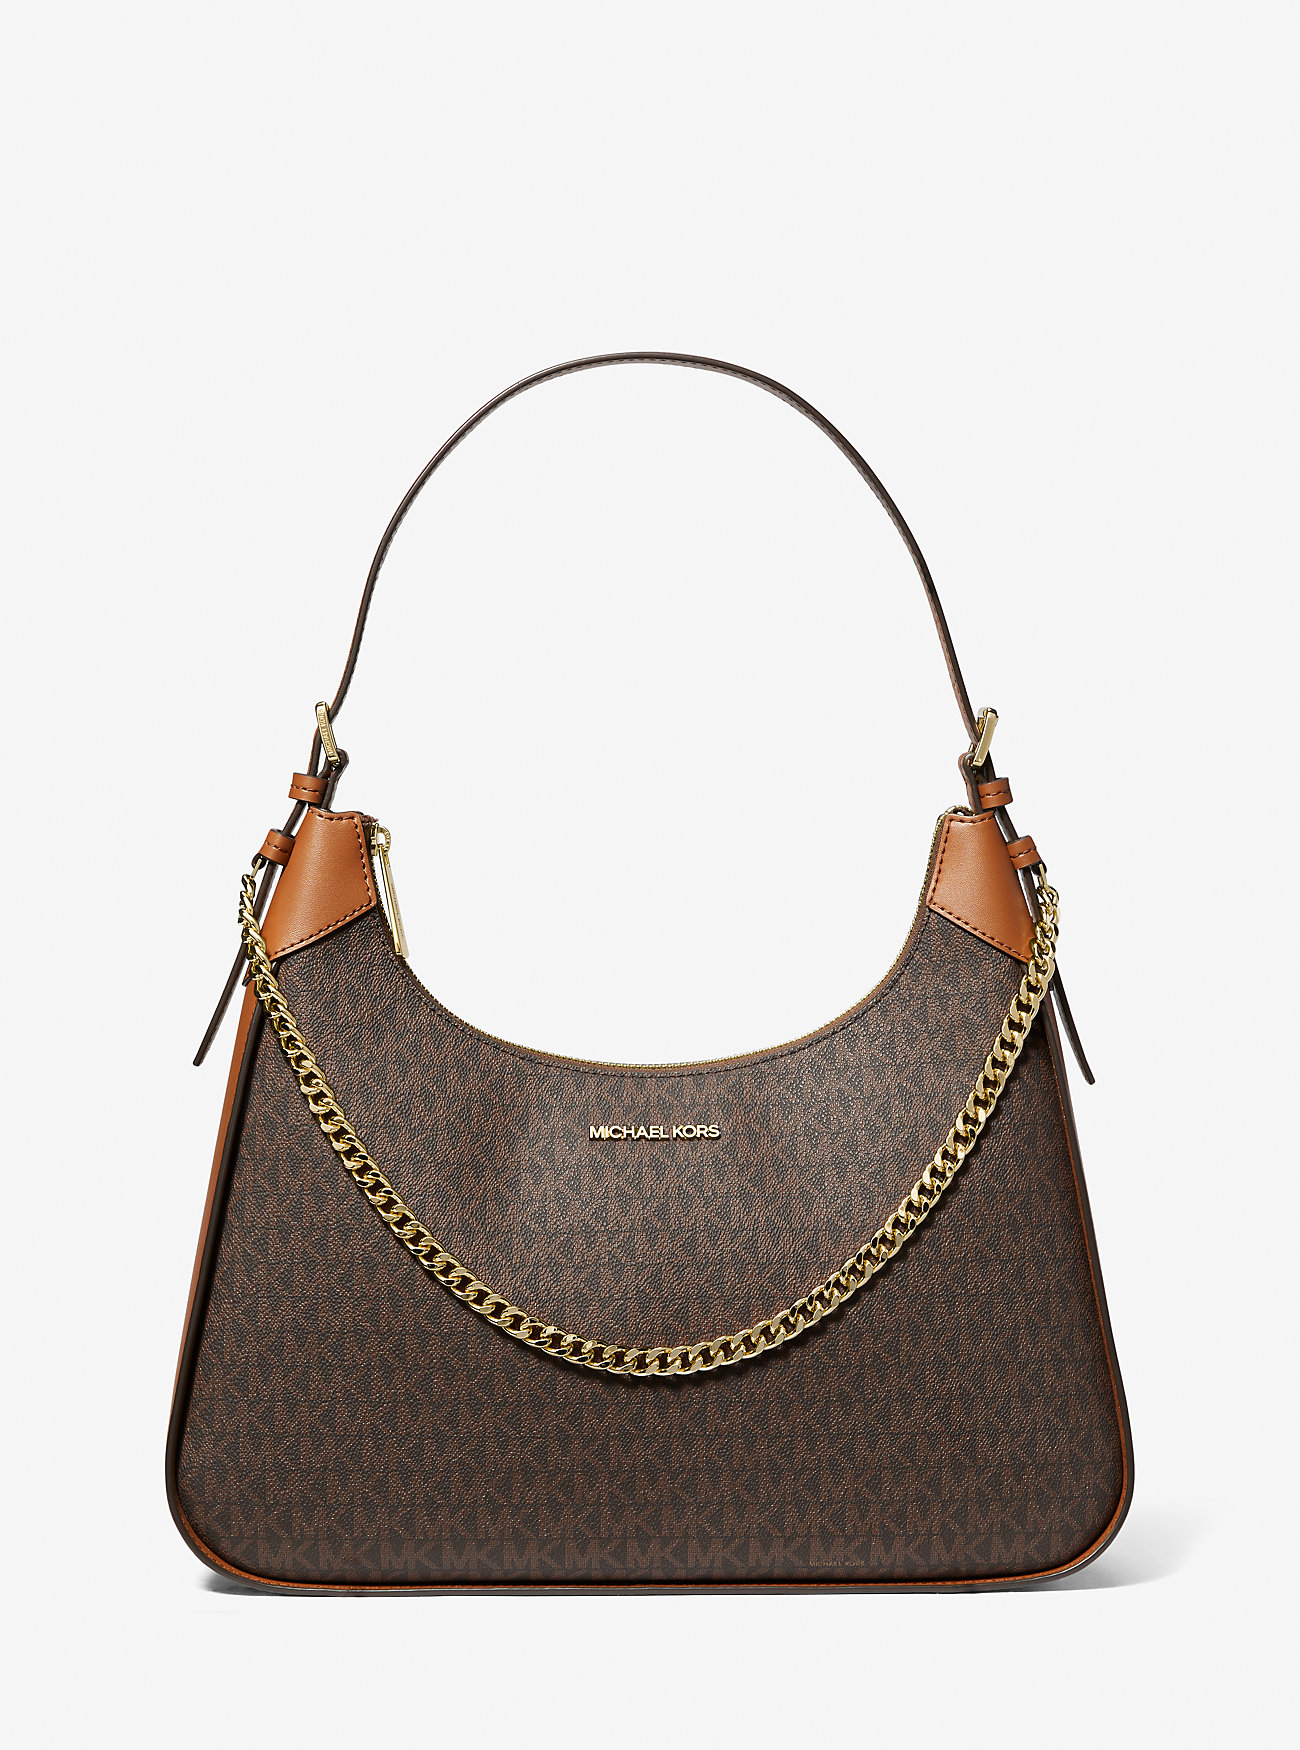 Большая сумка через плечо с фирменным логотипом Wilma Michael Kors, коричневый